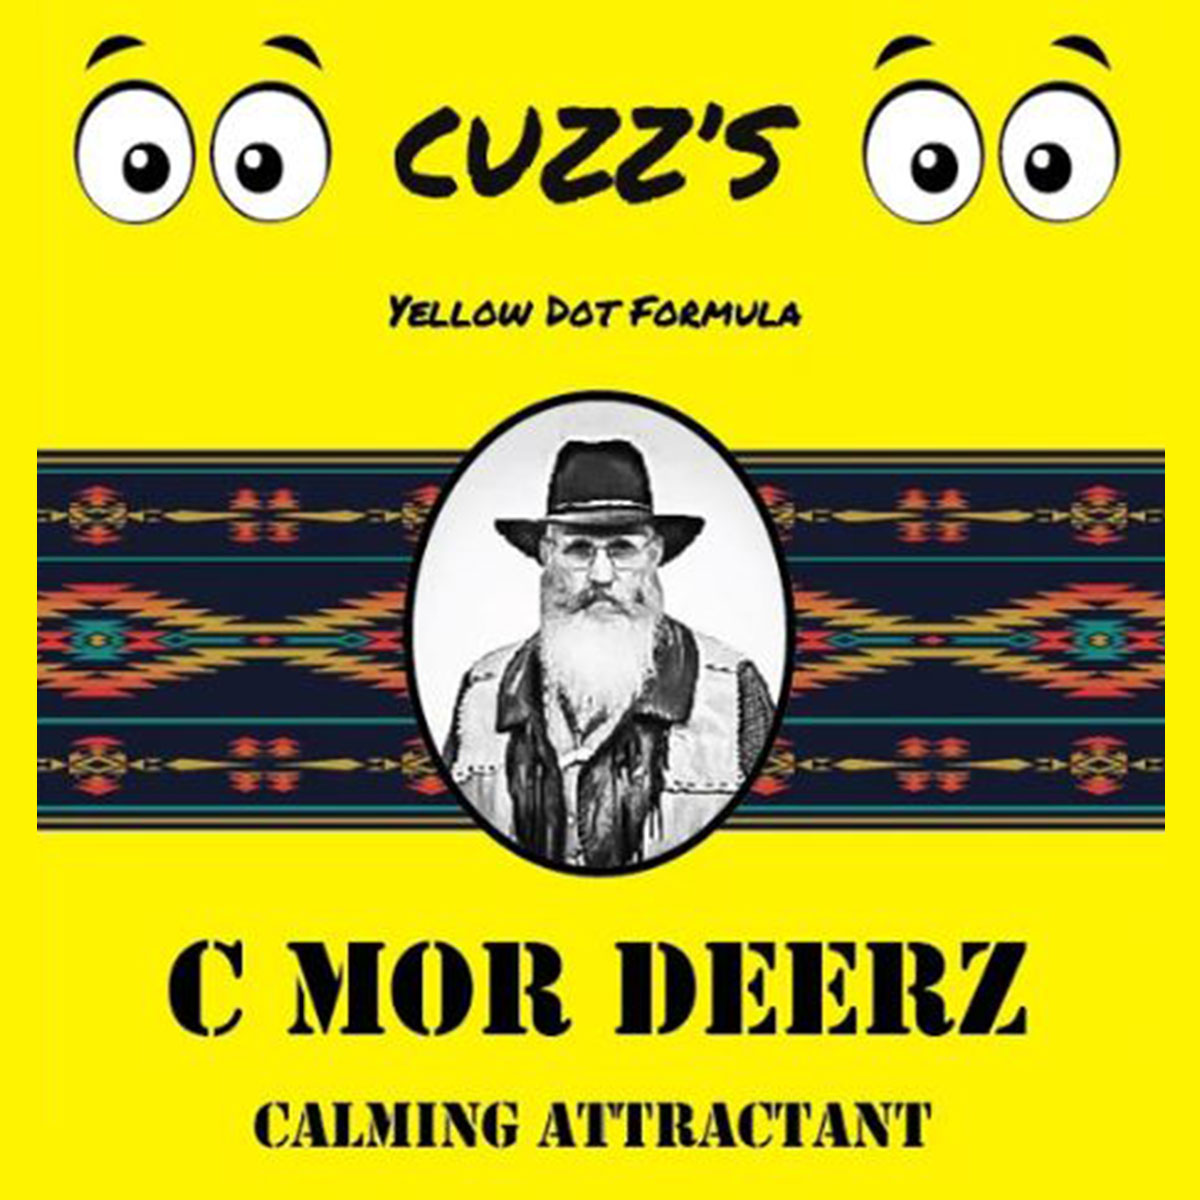 Cuzz's C Mor Deerz